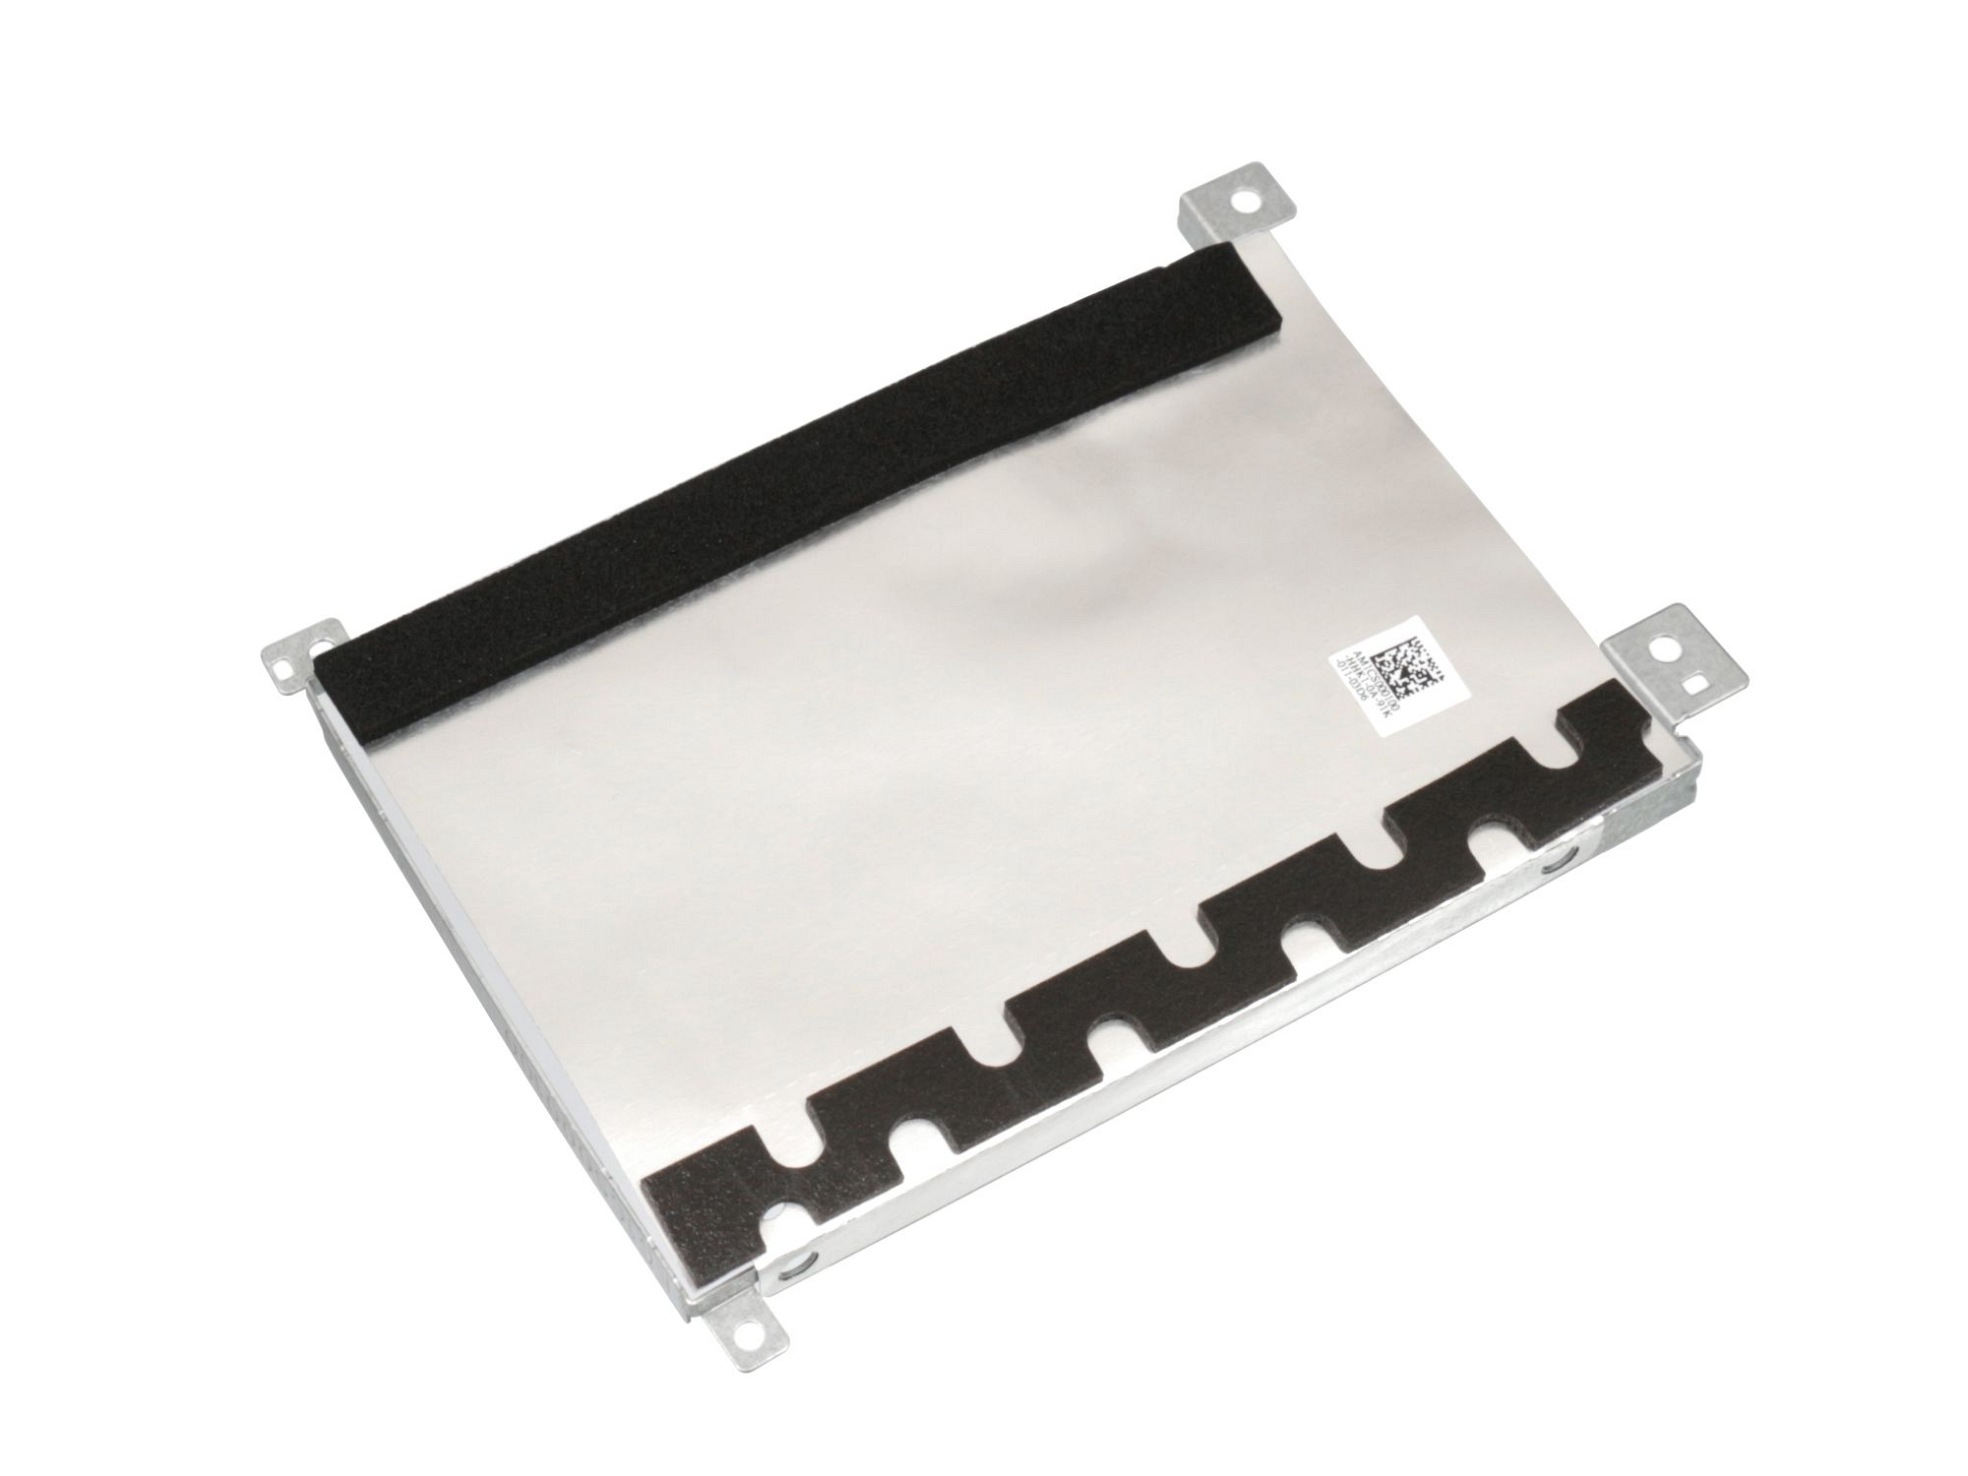 Festplatten-Einbaurahmen für den 1. Festplatten Schacht Original für Lenovo IdeaPad S145-14IGM (81MW)